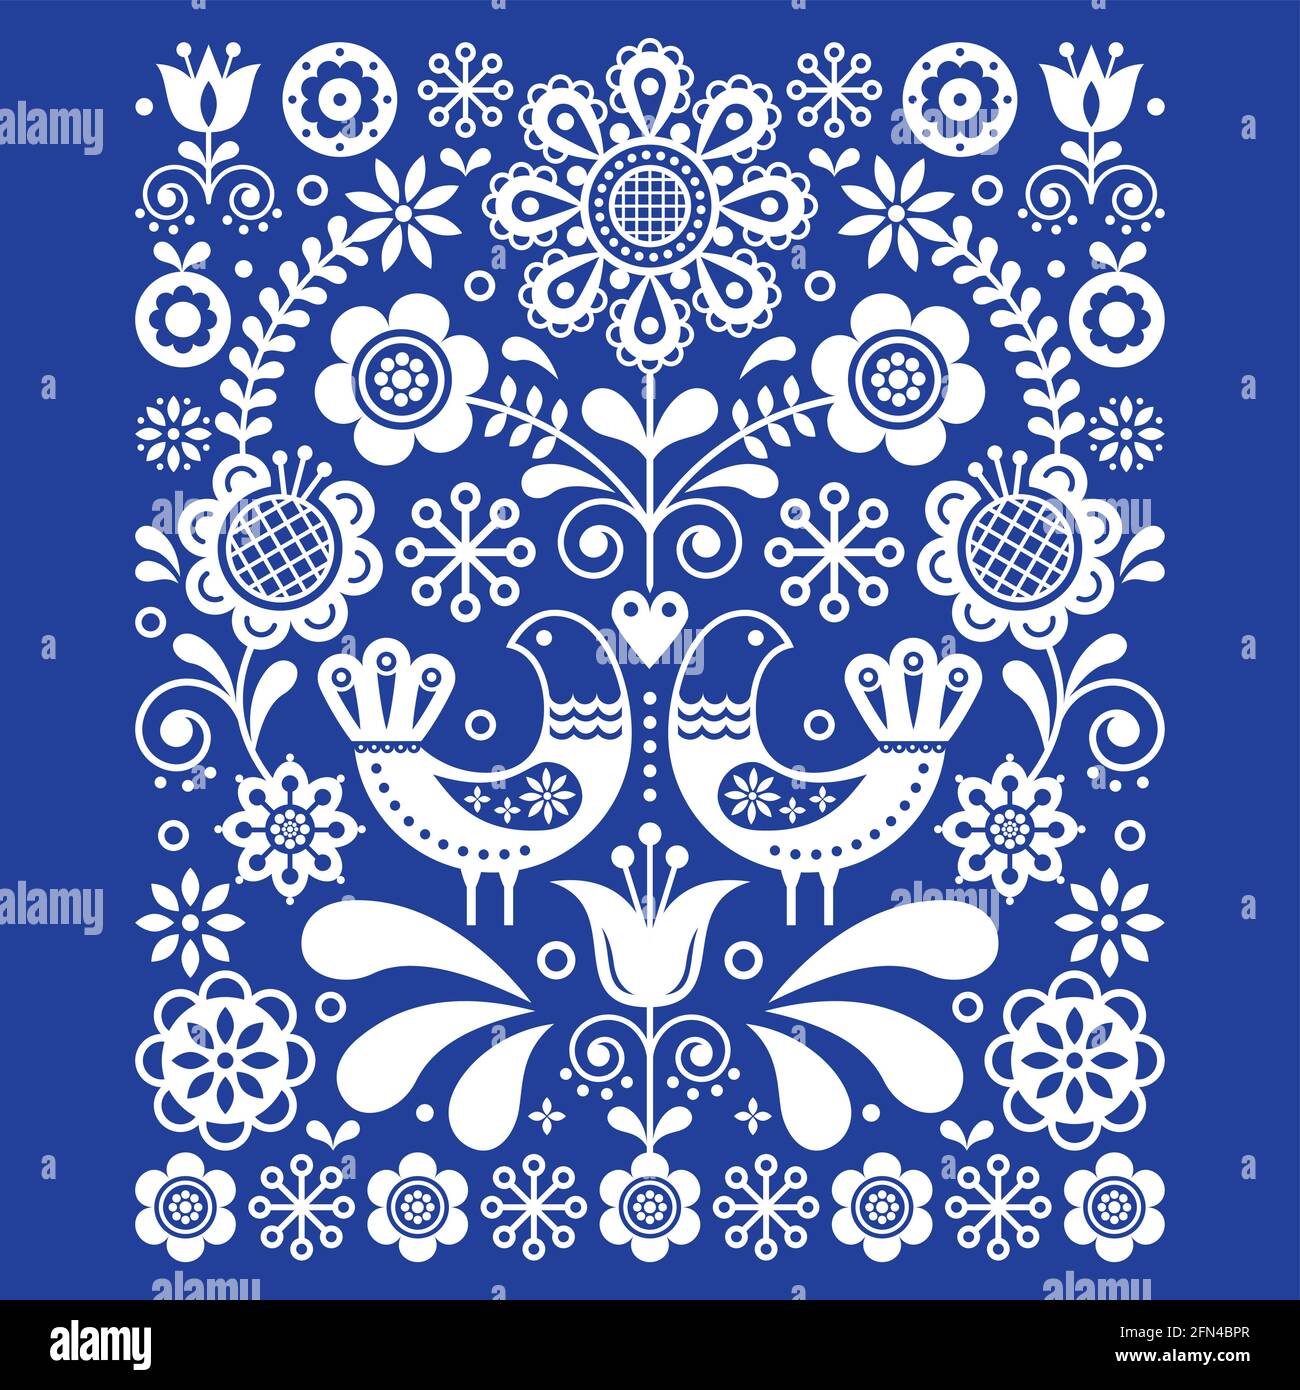 Skandinavische niedliche Volkskunst Vektor Dekoration mit Vögeln und Blumen, skandinavisches Blumenmuster in weiß auf marineblau Stock Vektor